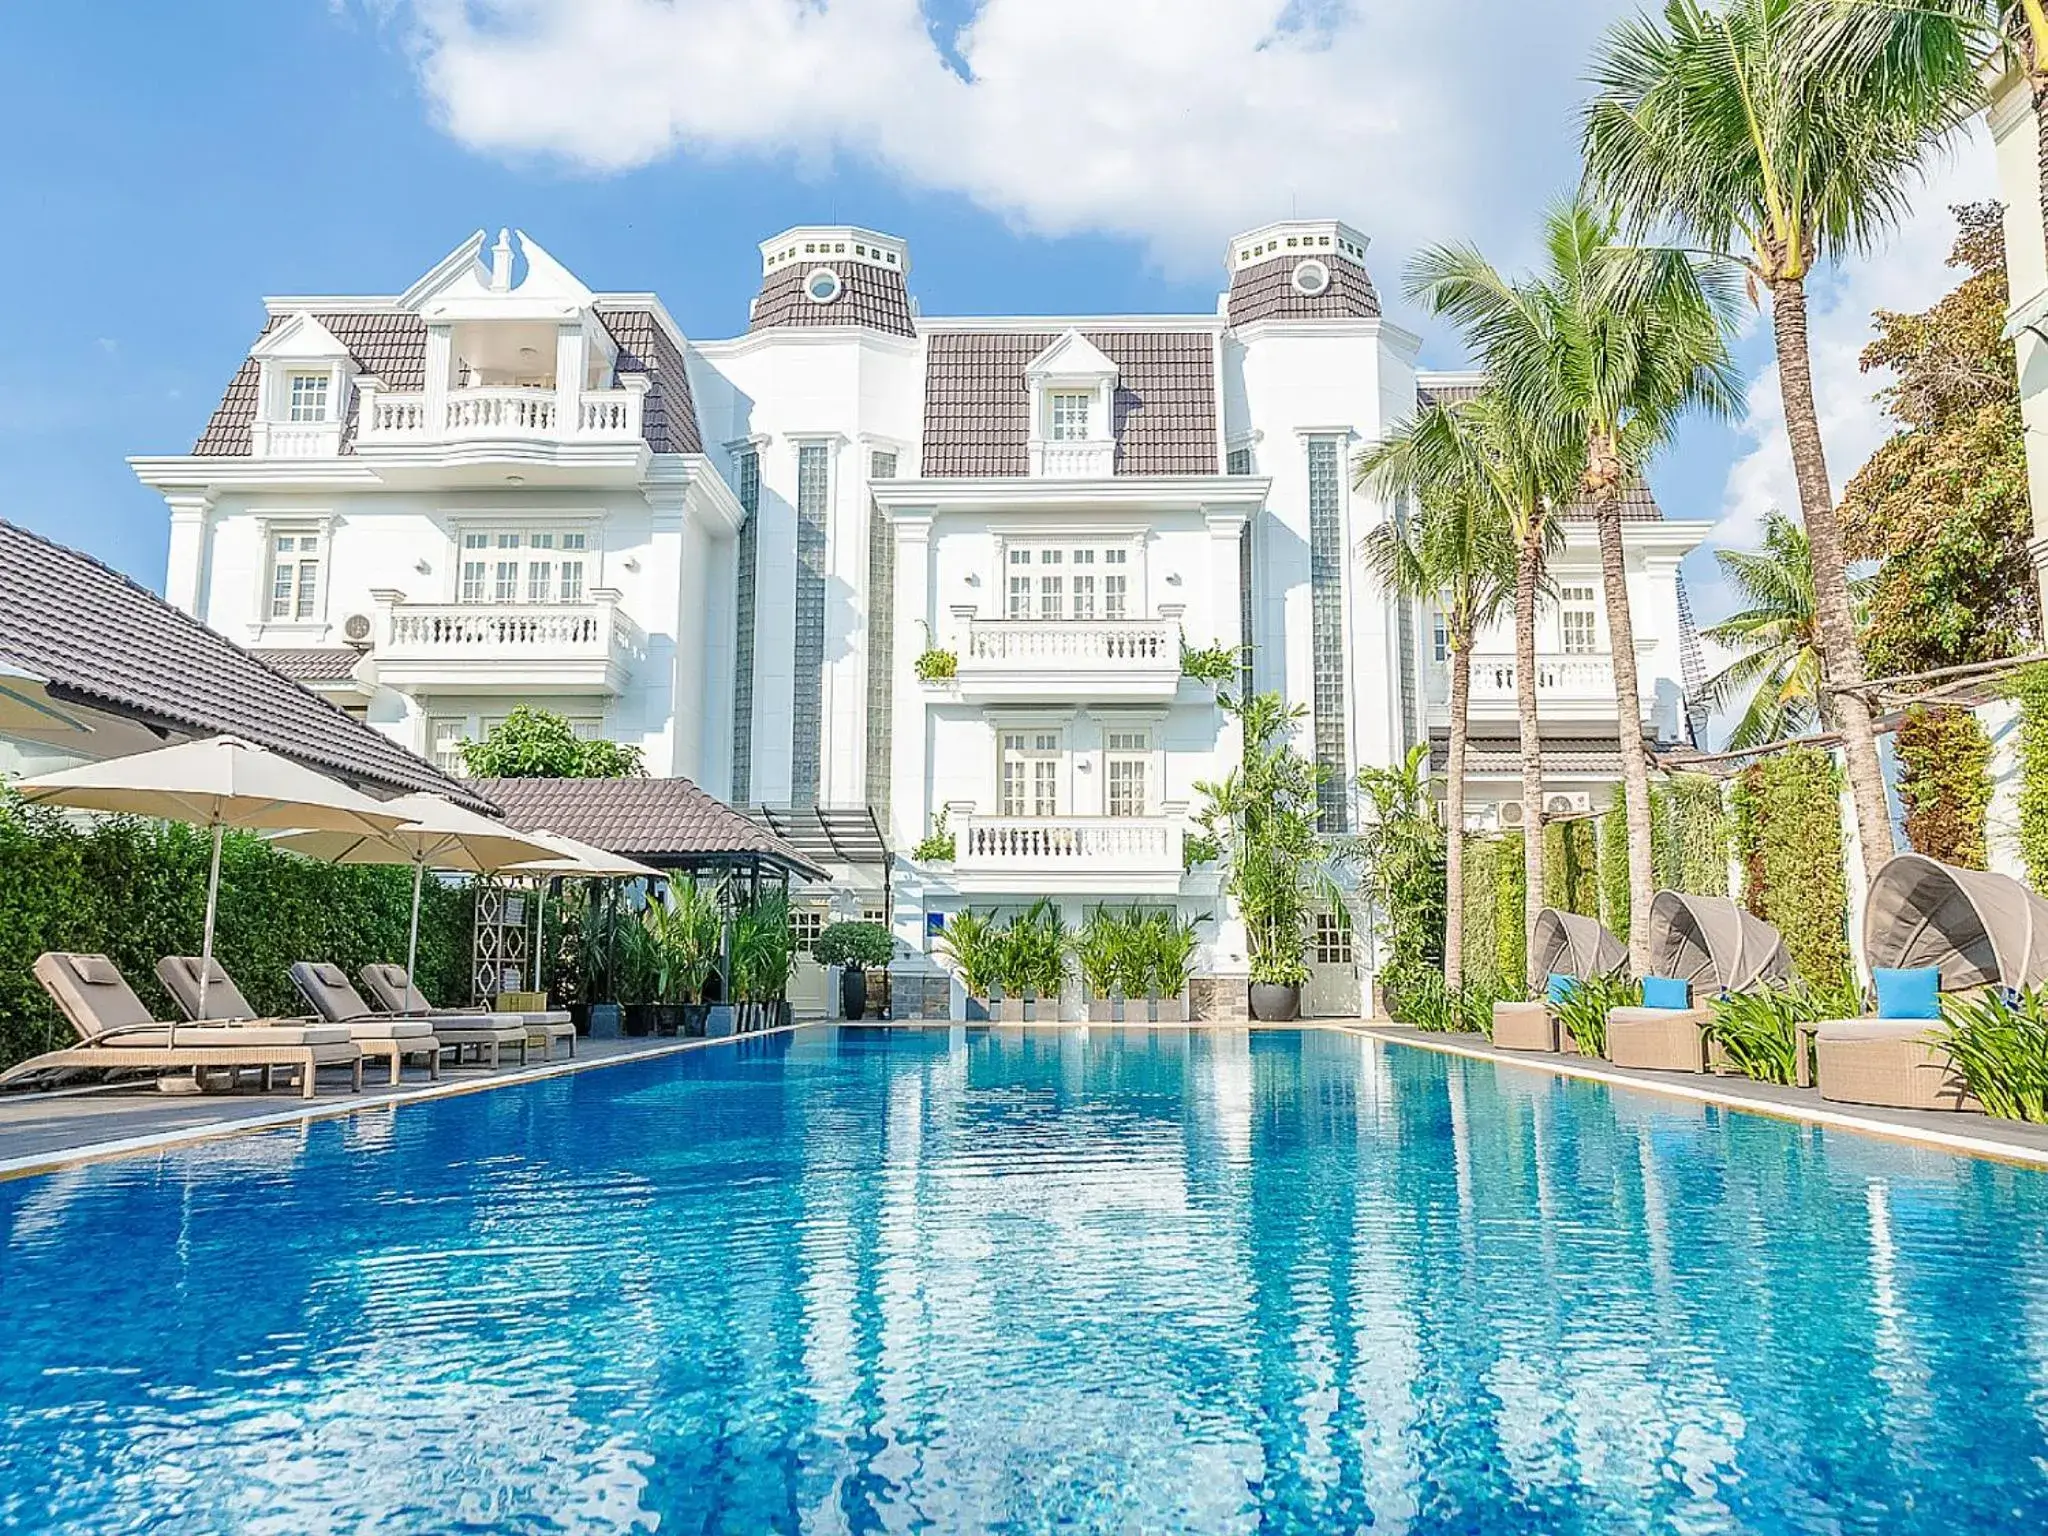 Property building, Swimming Pool in Villa Song Saigon (Saigon River Villa)